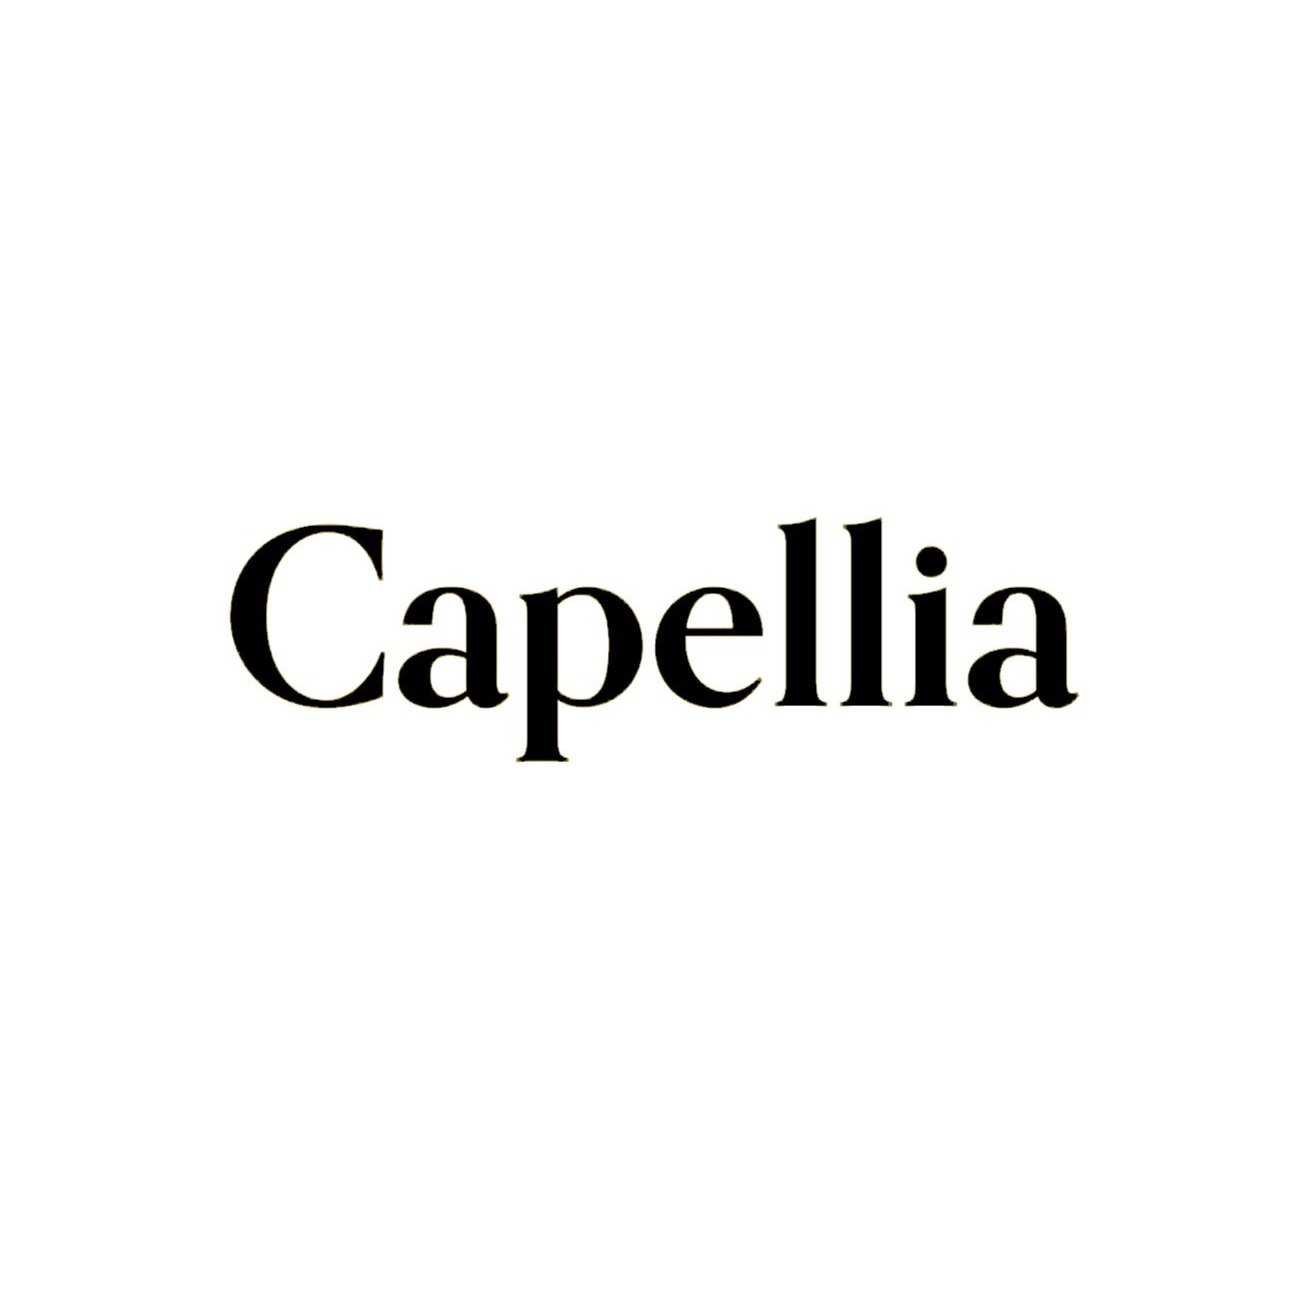 Capellia.jpg